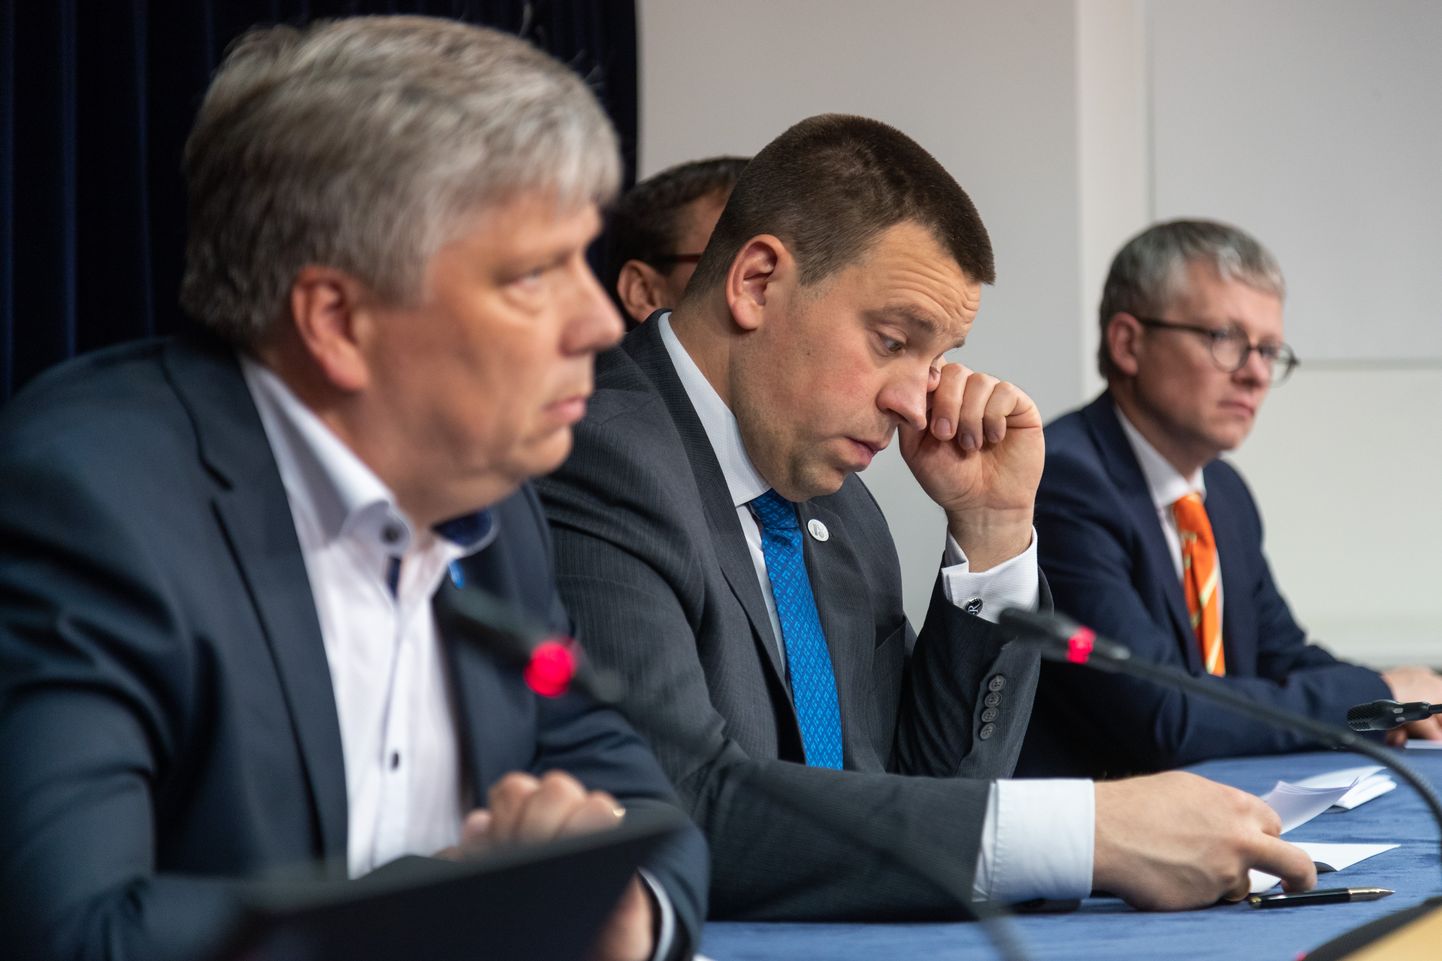 Valitsuse pressikonverents.
Pildil vasakult Siim Kiisler, Jüri Ratas, Janek Mäggi.